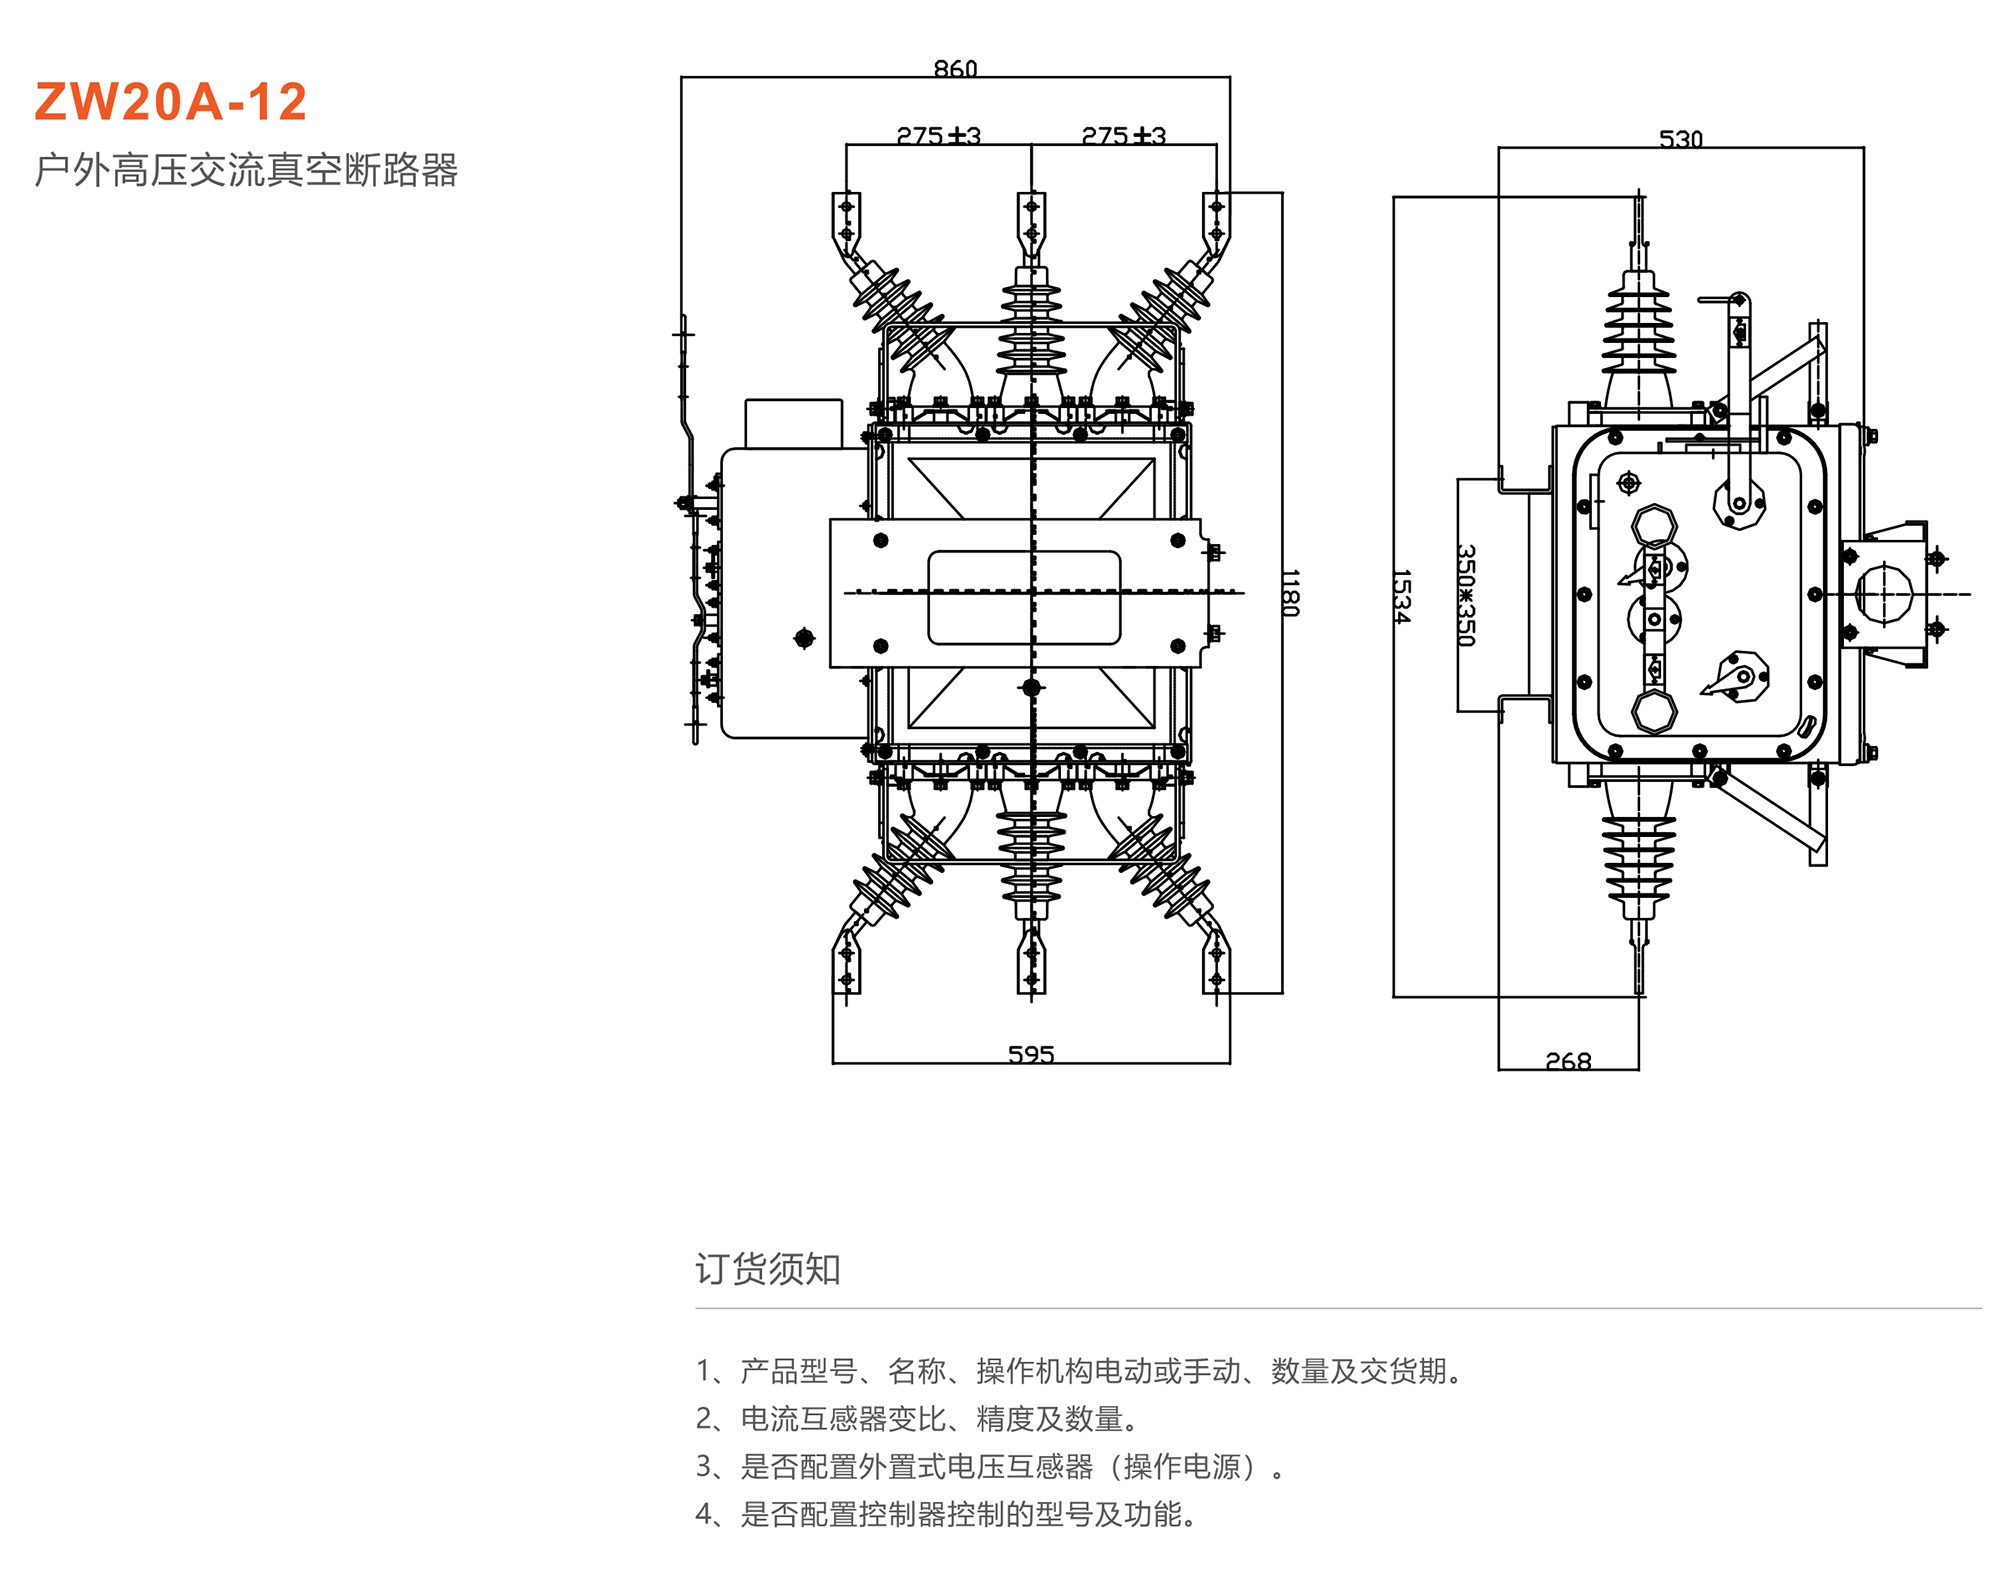 44118太阳成城集团 ZW20A-12型户外高压交流真空断路器